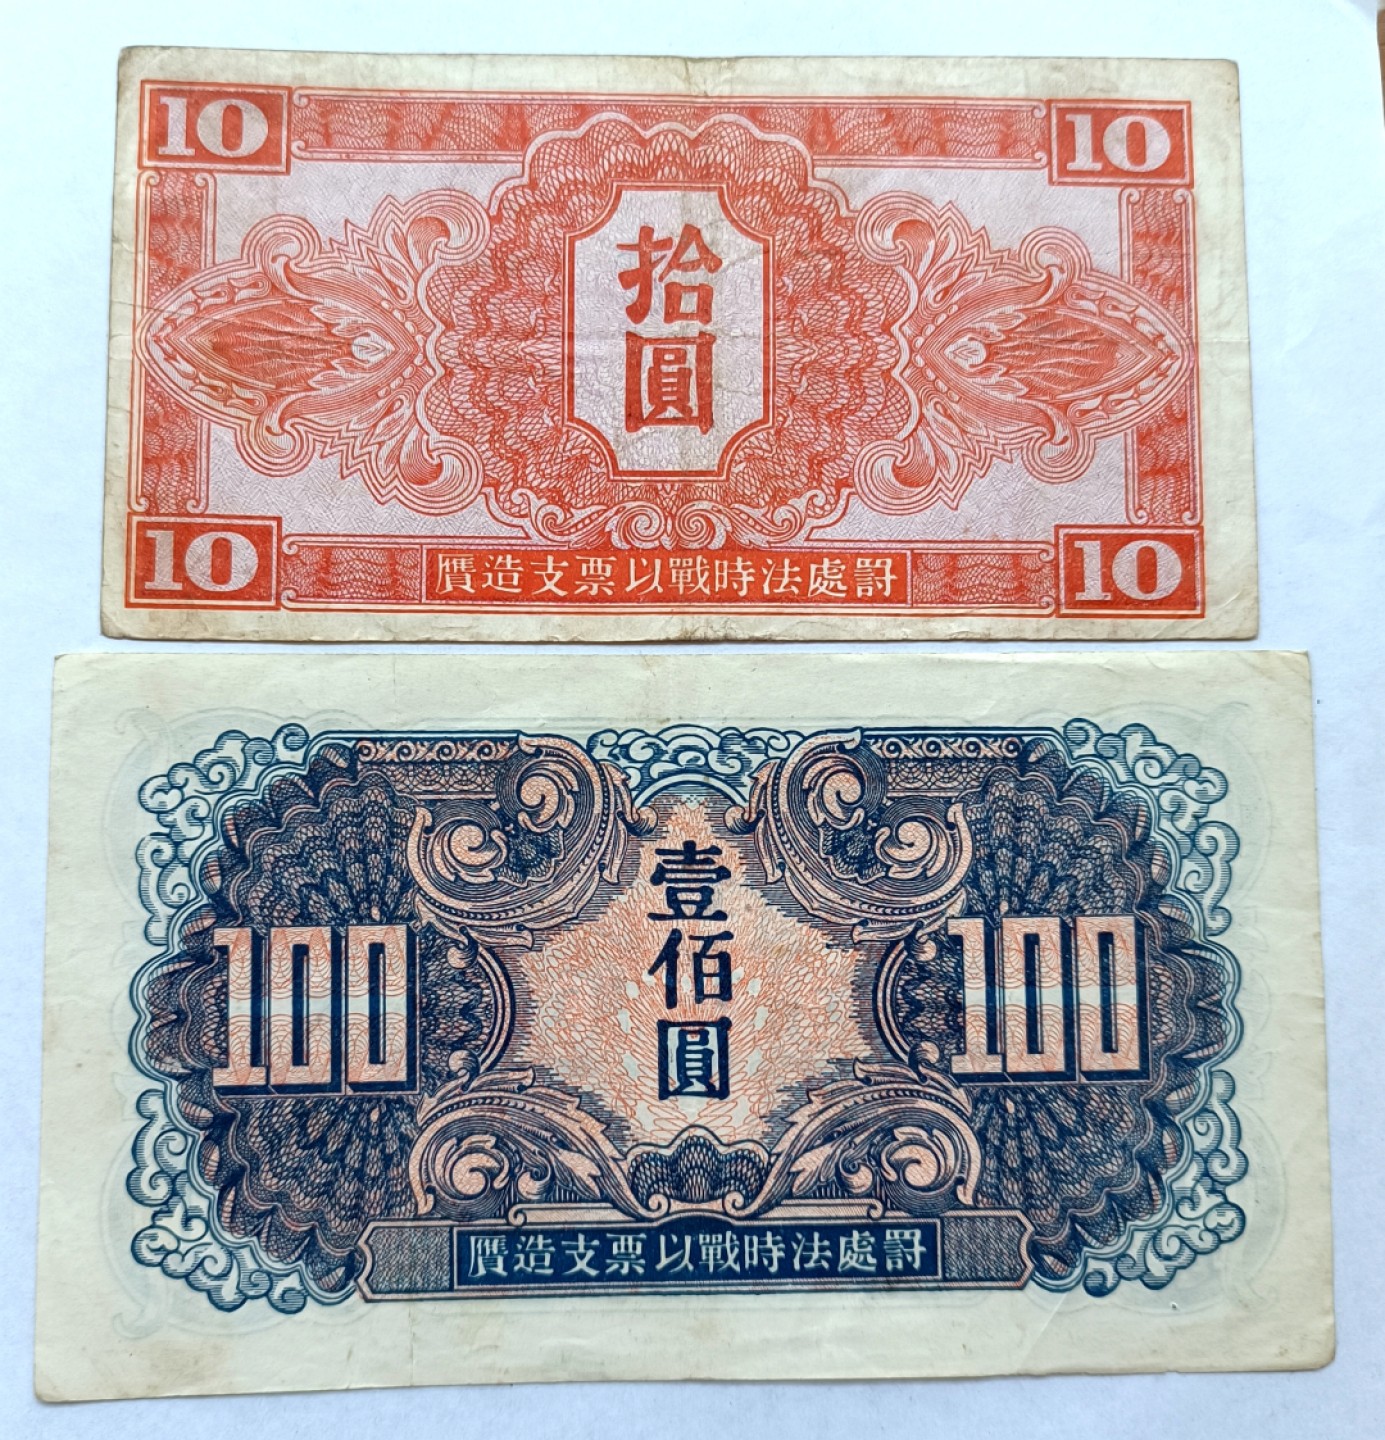 苏联红军司令部10、100元1945年红军票最大面值纸币2枚少见品种无破损 